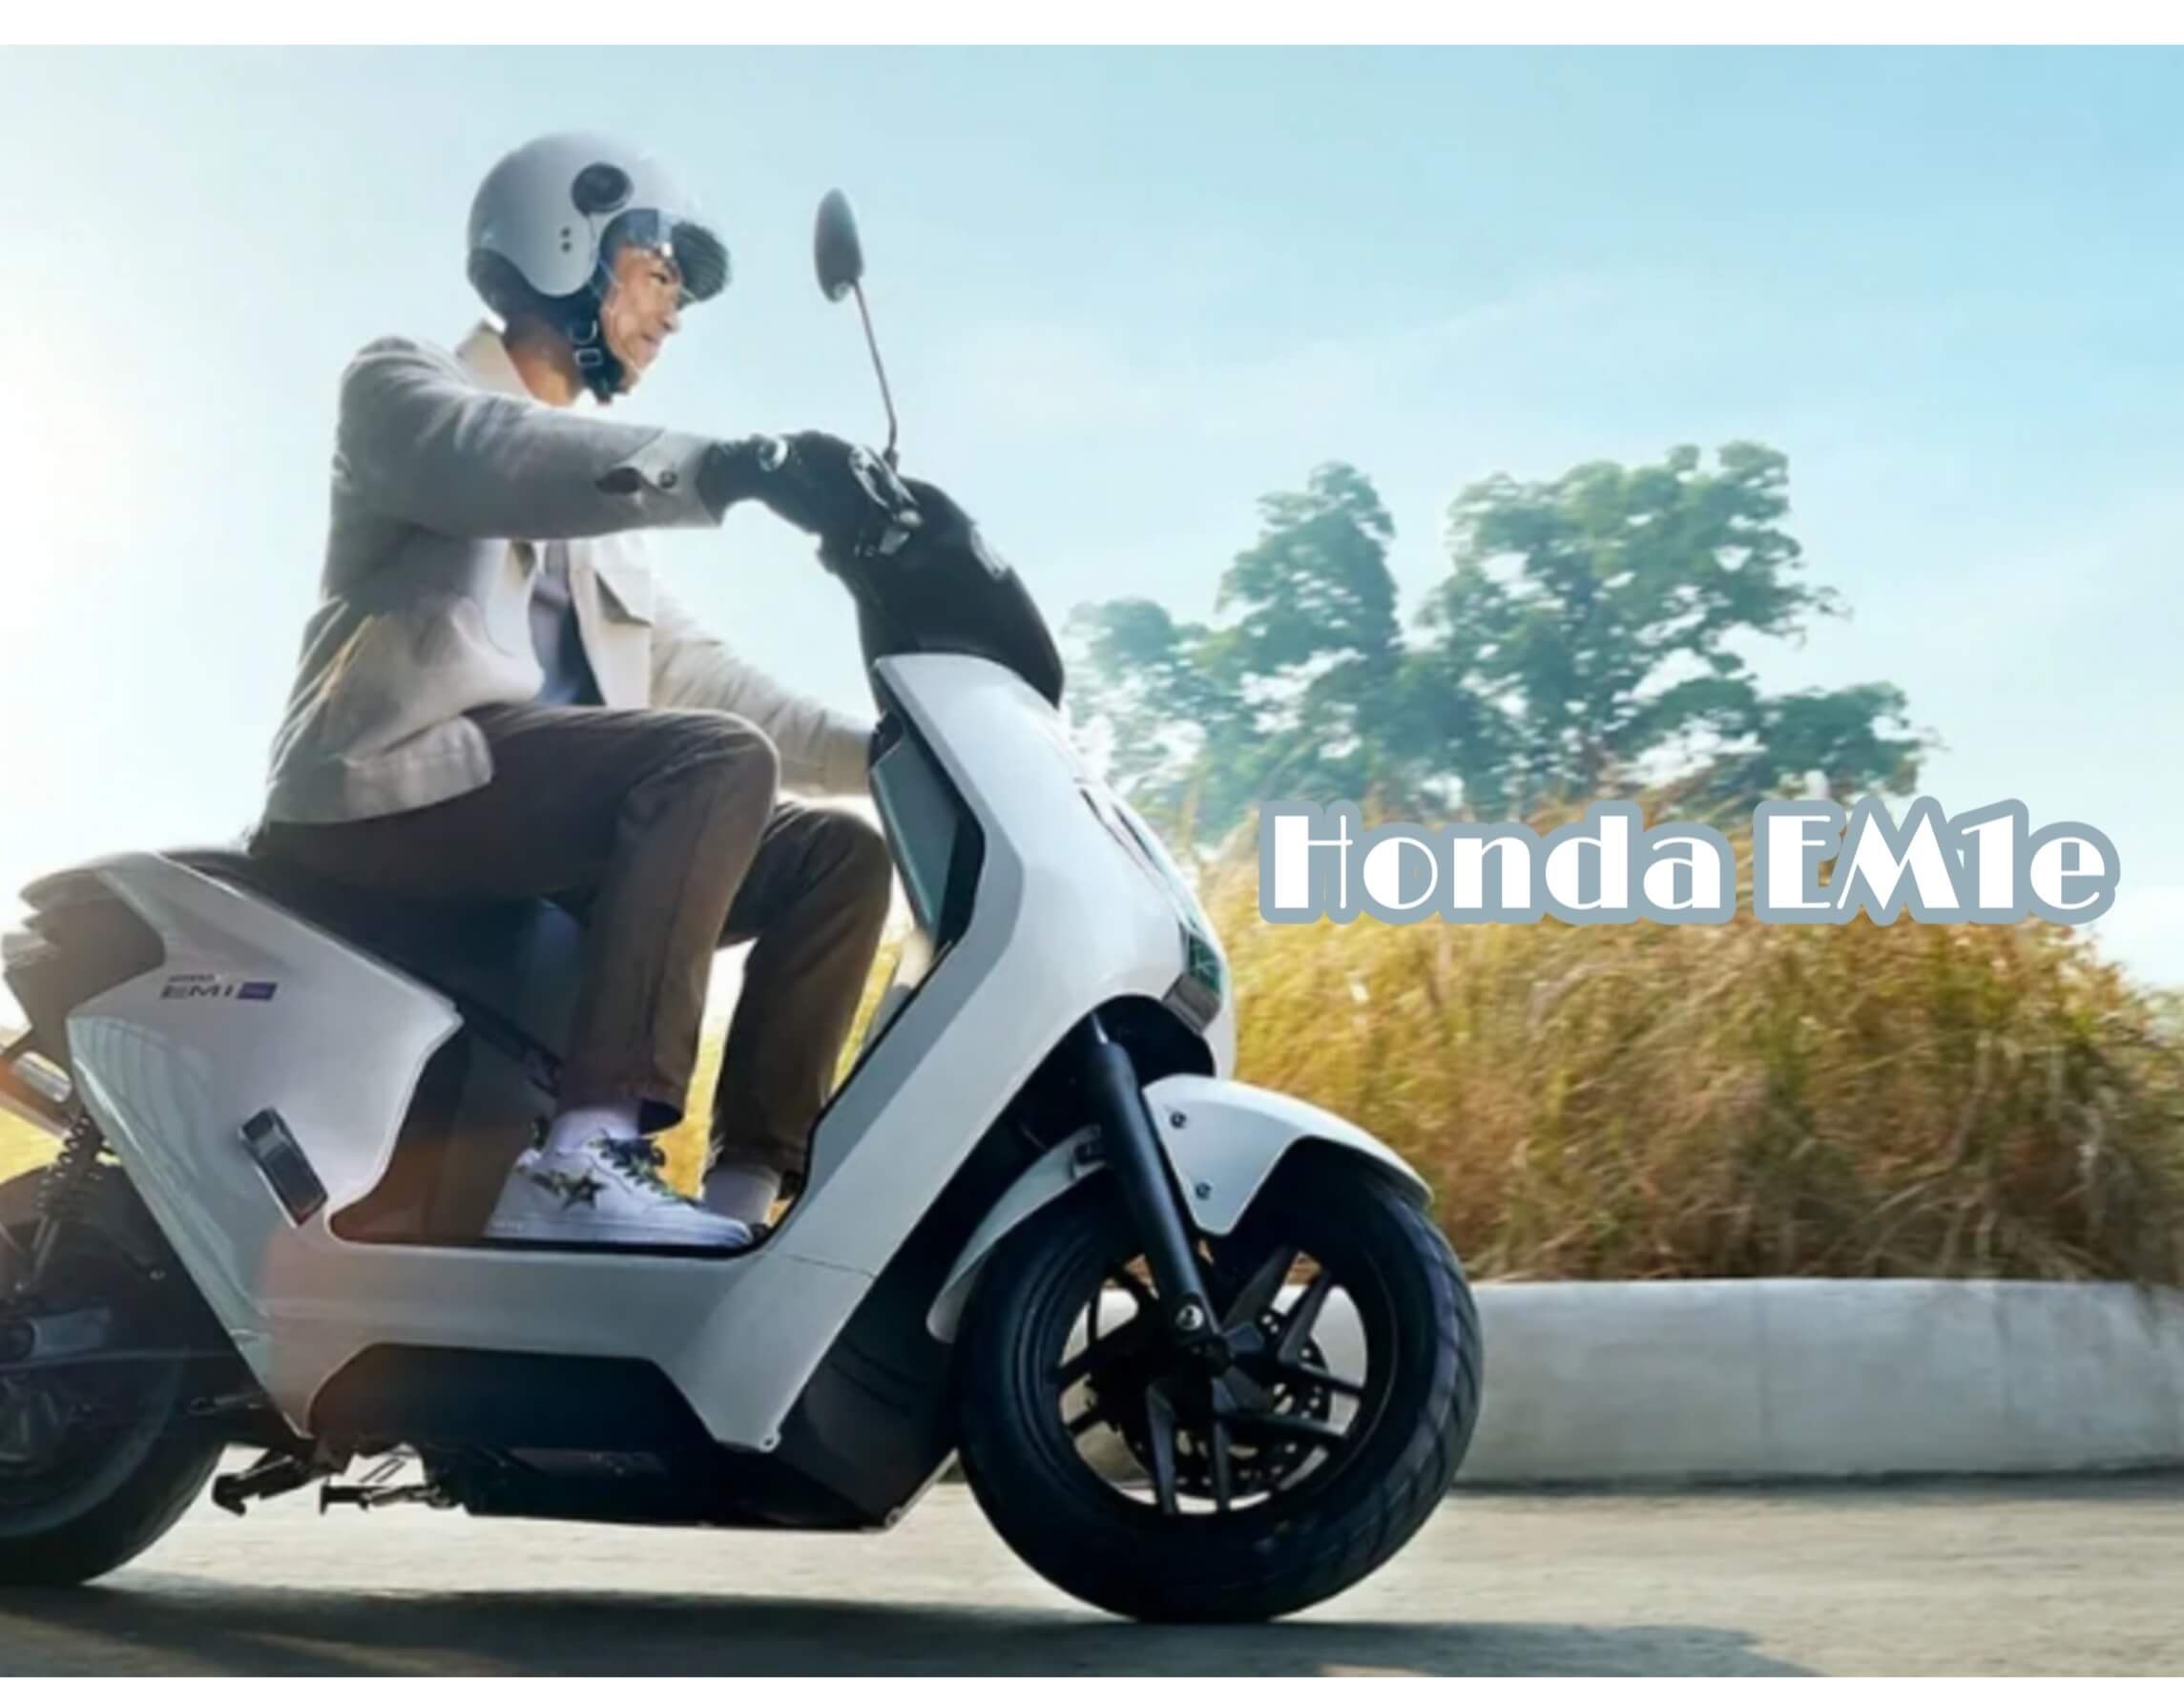 Kenapa Motor Listrik Honda EM1e dan Yamaha E01 Gak Ikut Disubsidi? Ini Jawabannya